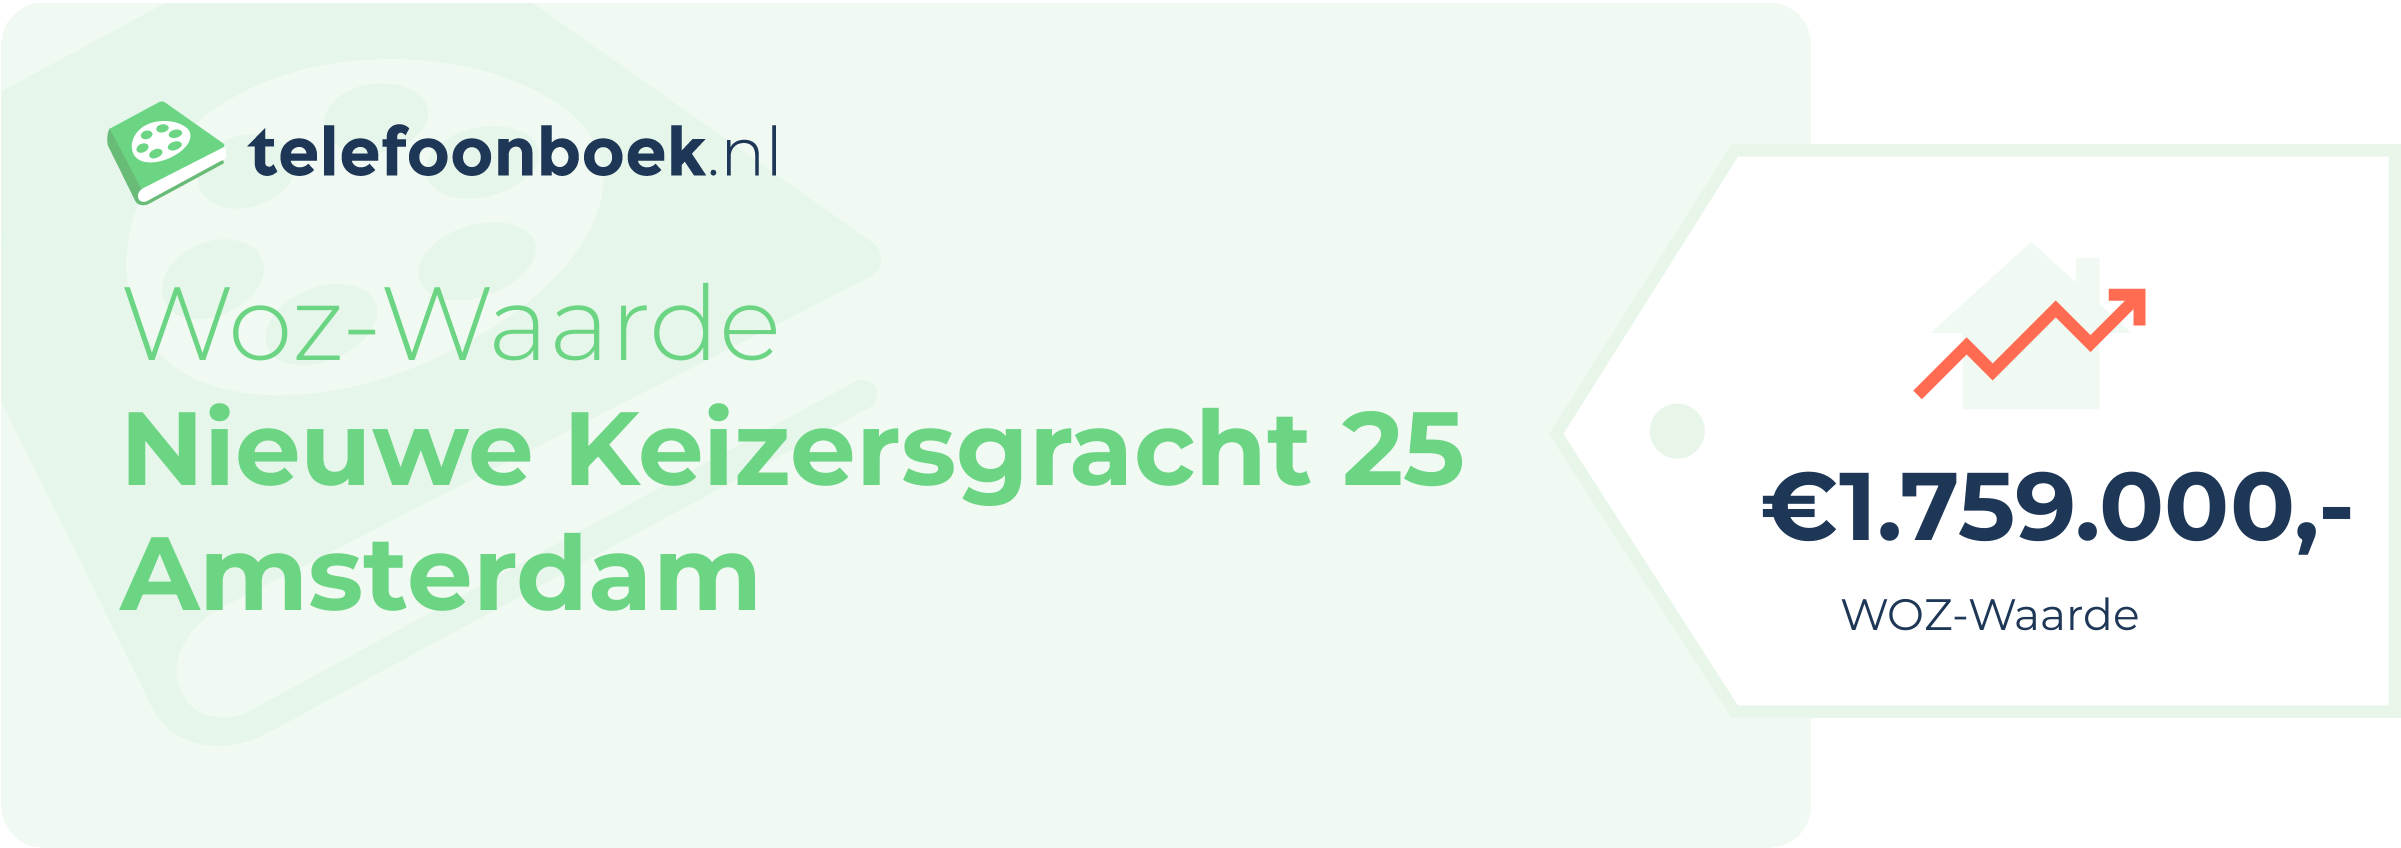 WOZ-waarde Nieuwe Keizersgracht 25 Amsterdam